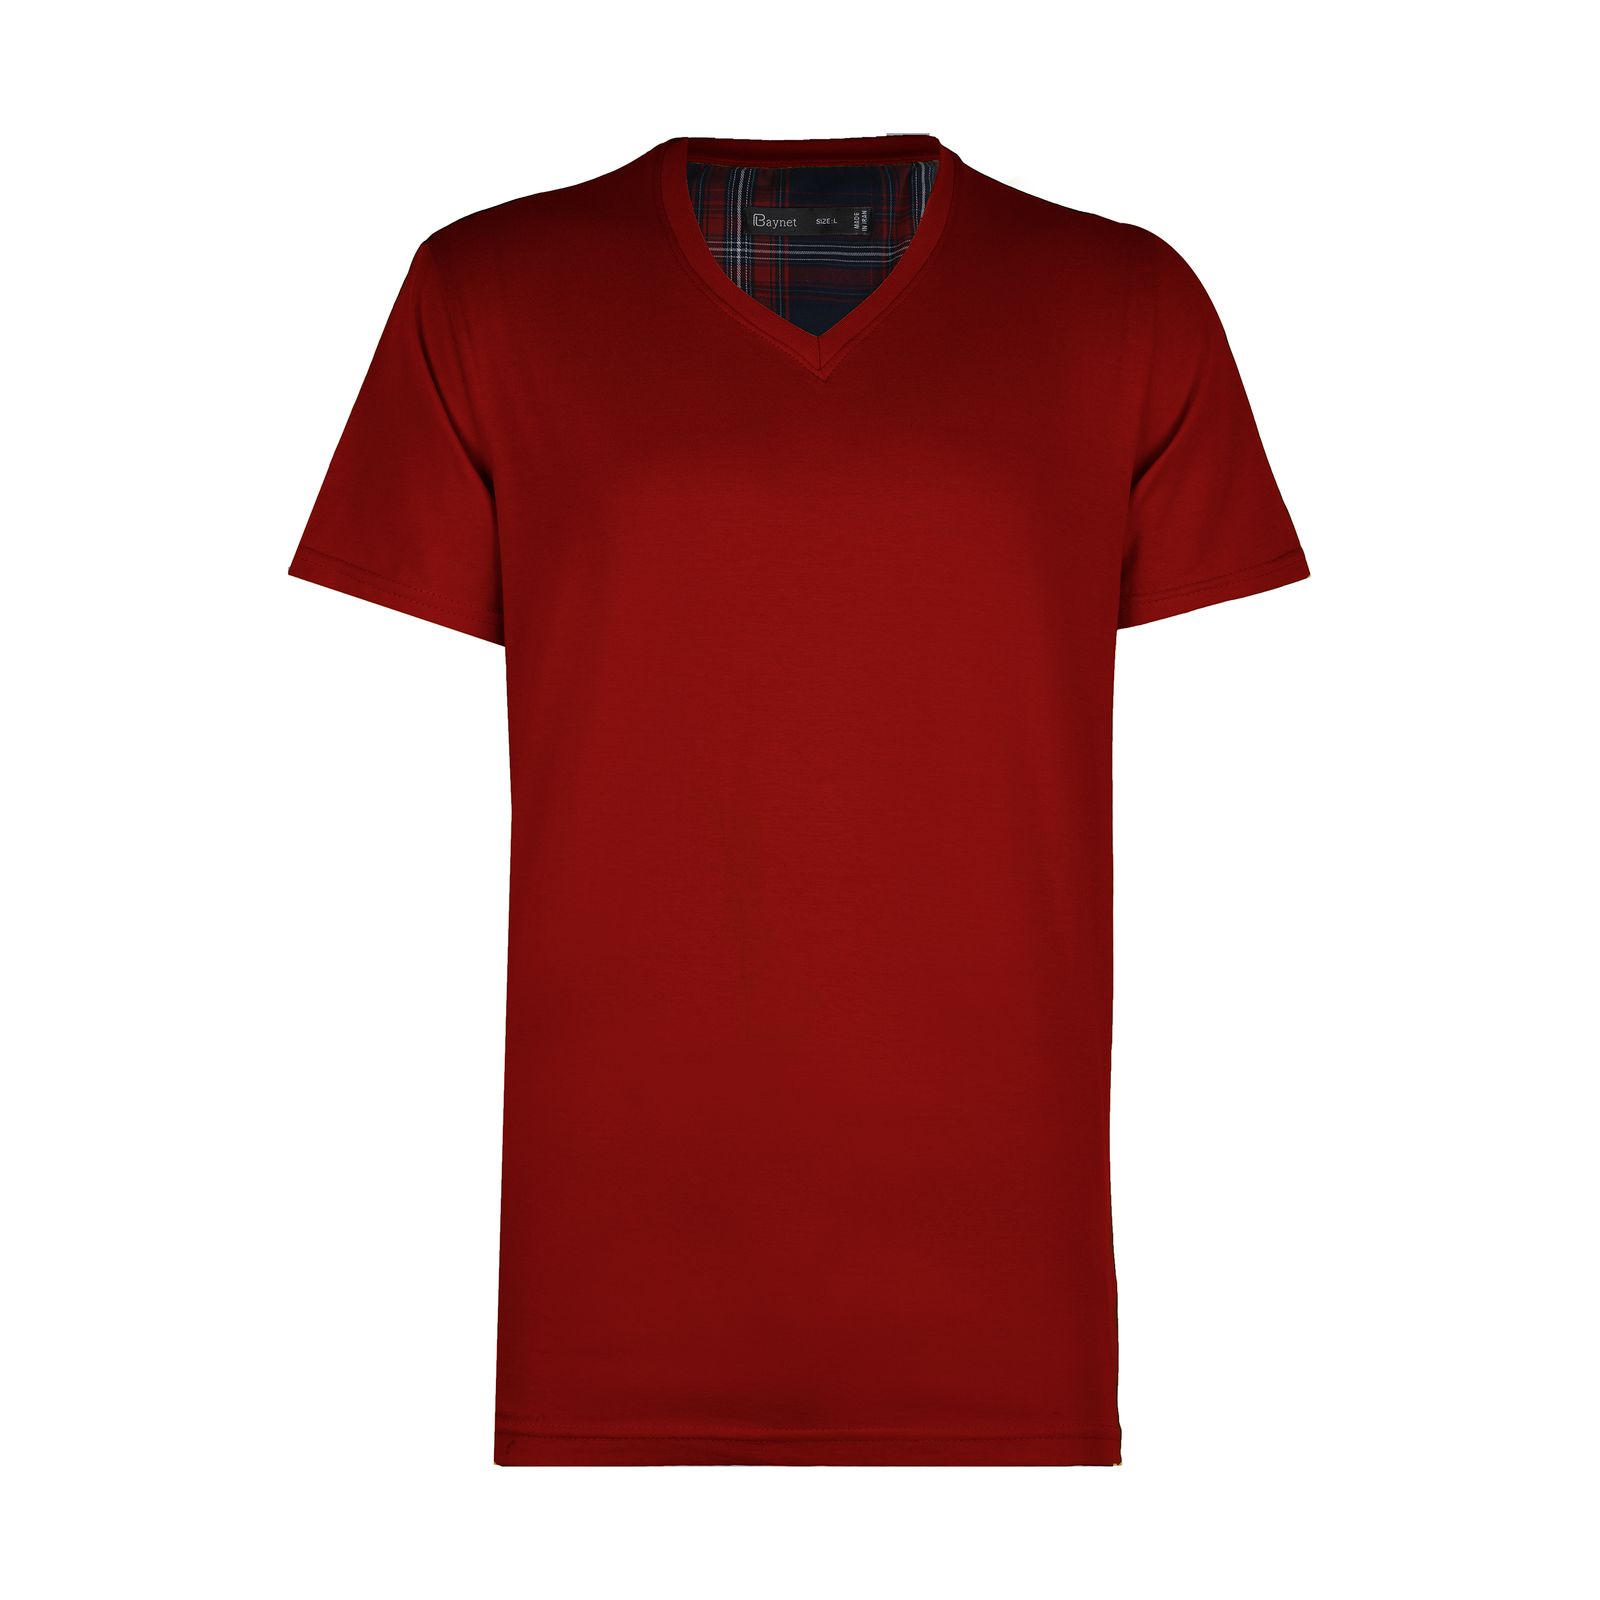 تی شرت مردانه باینت مدل 2261485-72 -  - 1